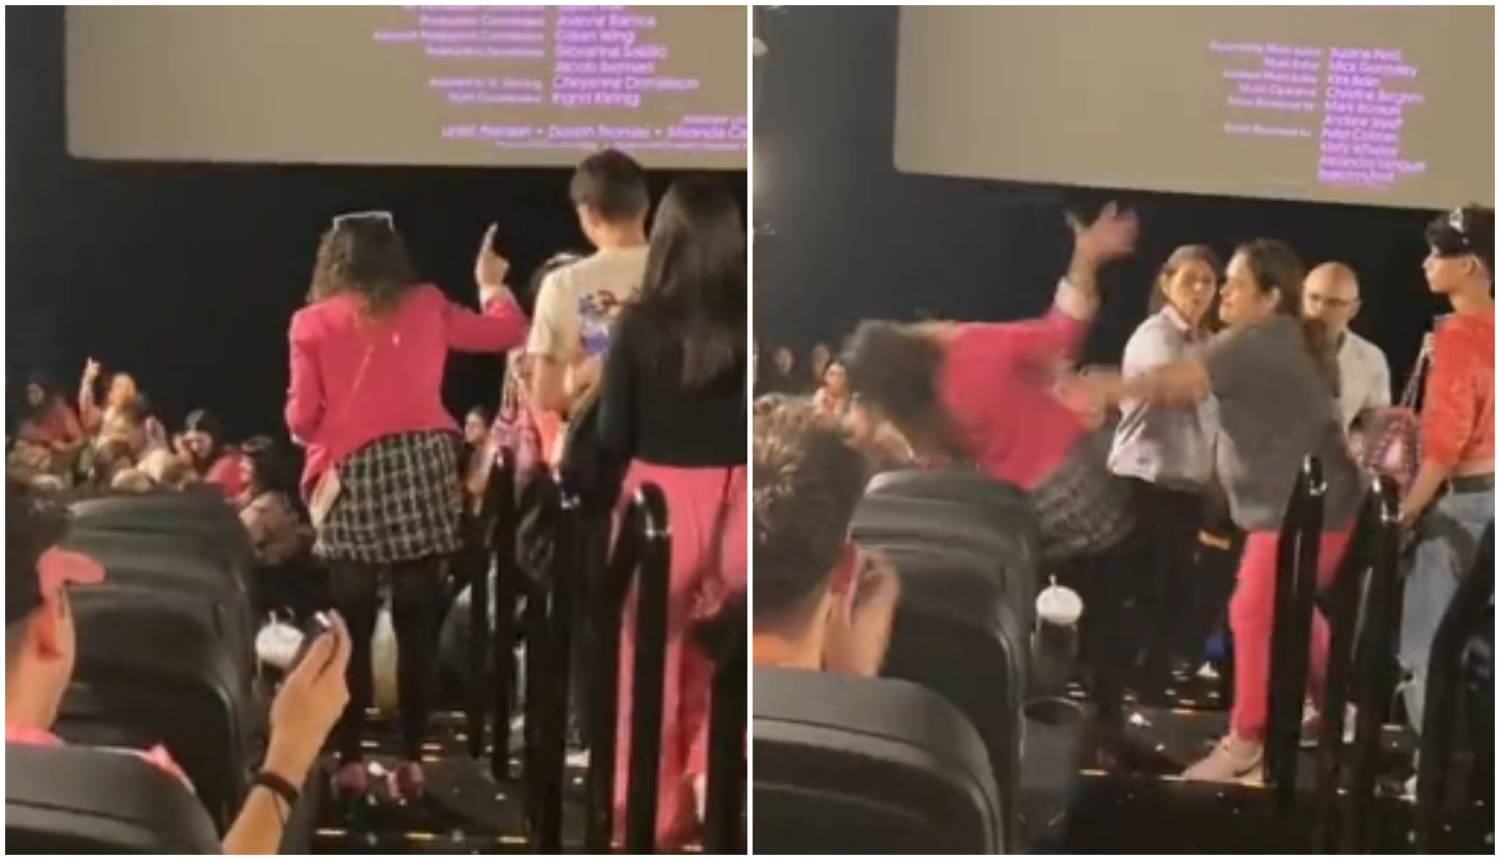 Šokantna situacija u kinu nakon 'Barbie': Dvije žene se svađale pa i potukle, drugi ih razdvajali